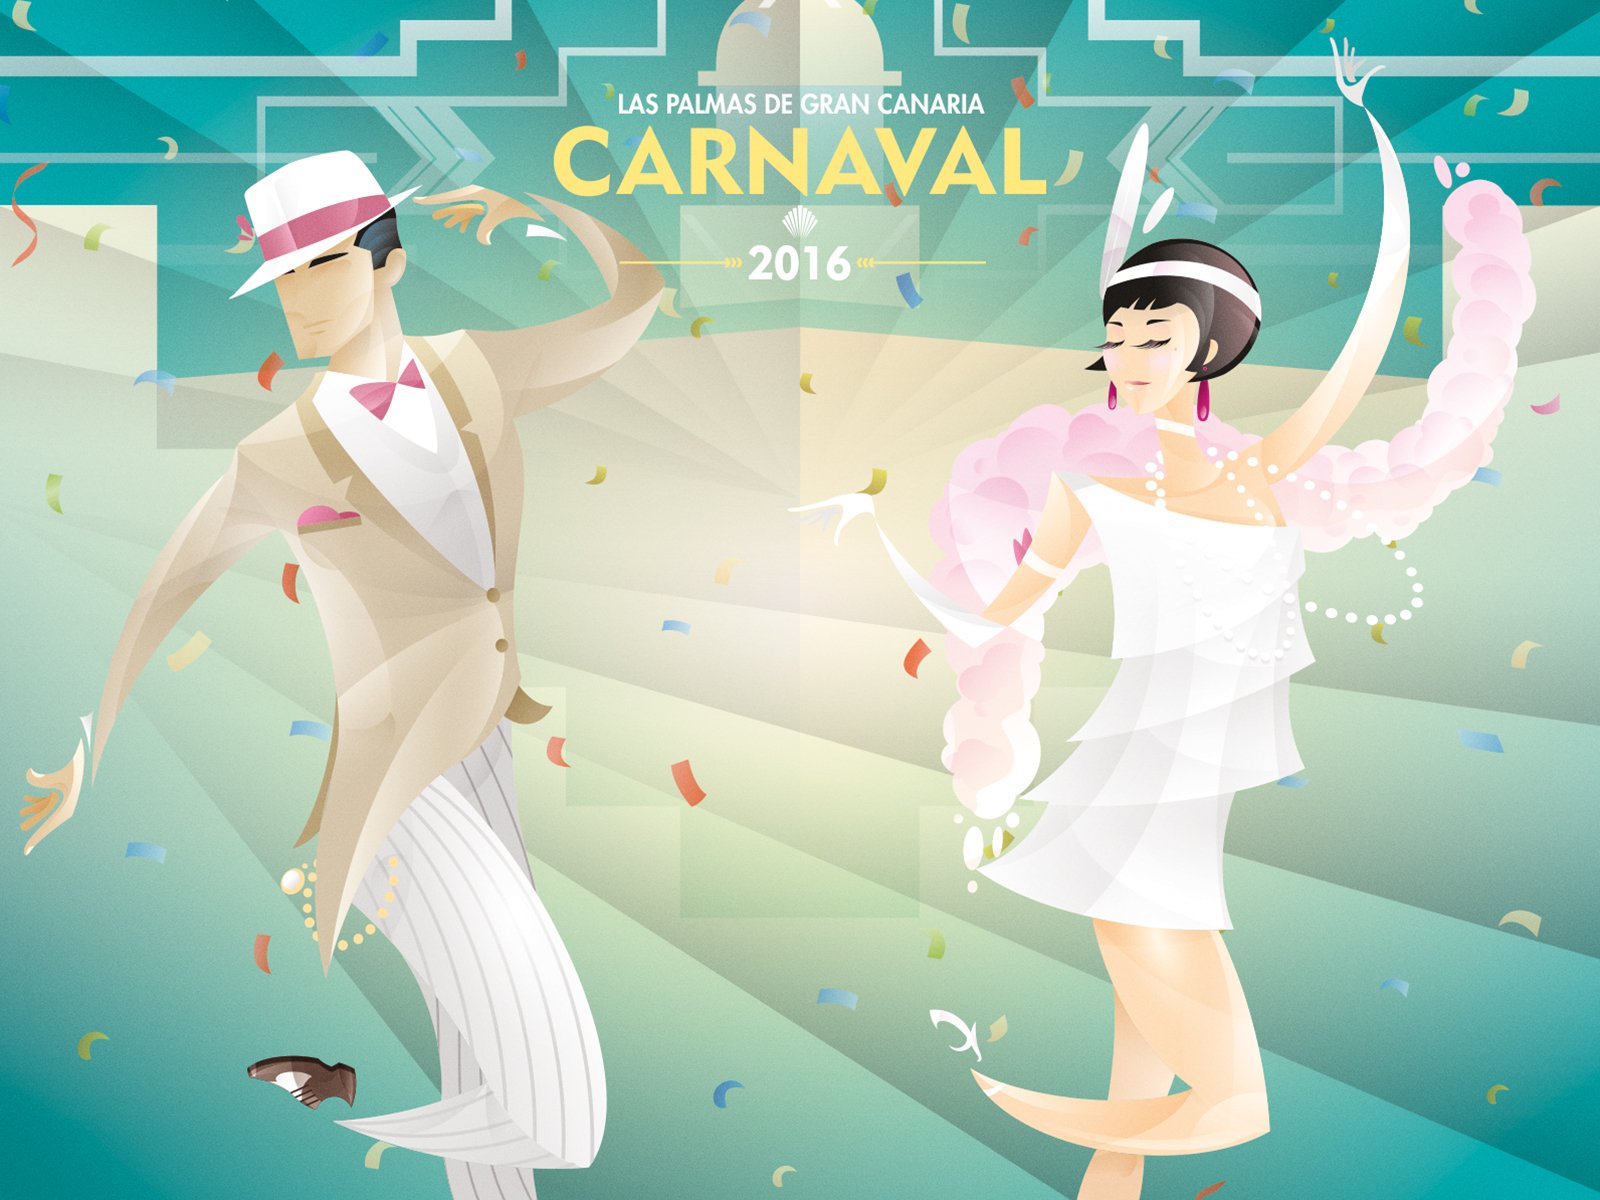 Un cartel evocador de los bailes de Los   locos años 20, obra de Waldemar Diseño y   Comunicación, será la imagen del Carnaval   2016 de Las Palmas de Gran Canaria